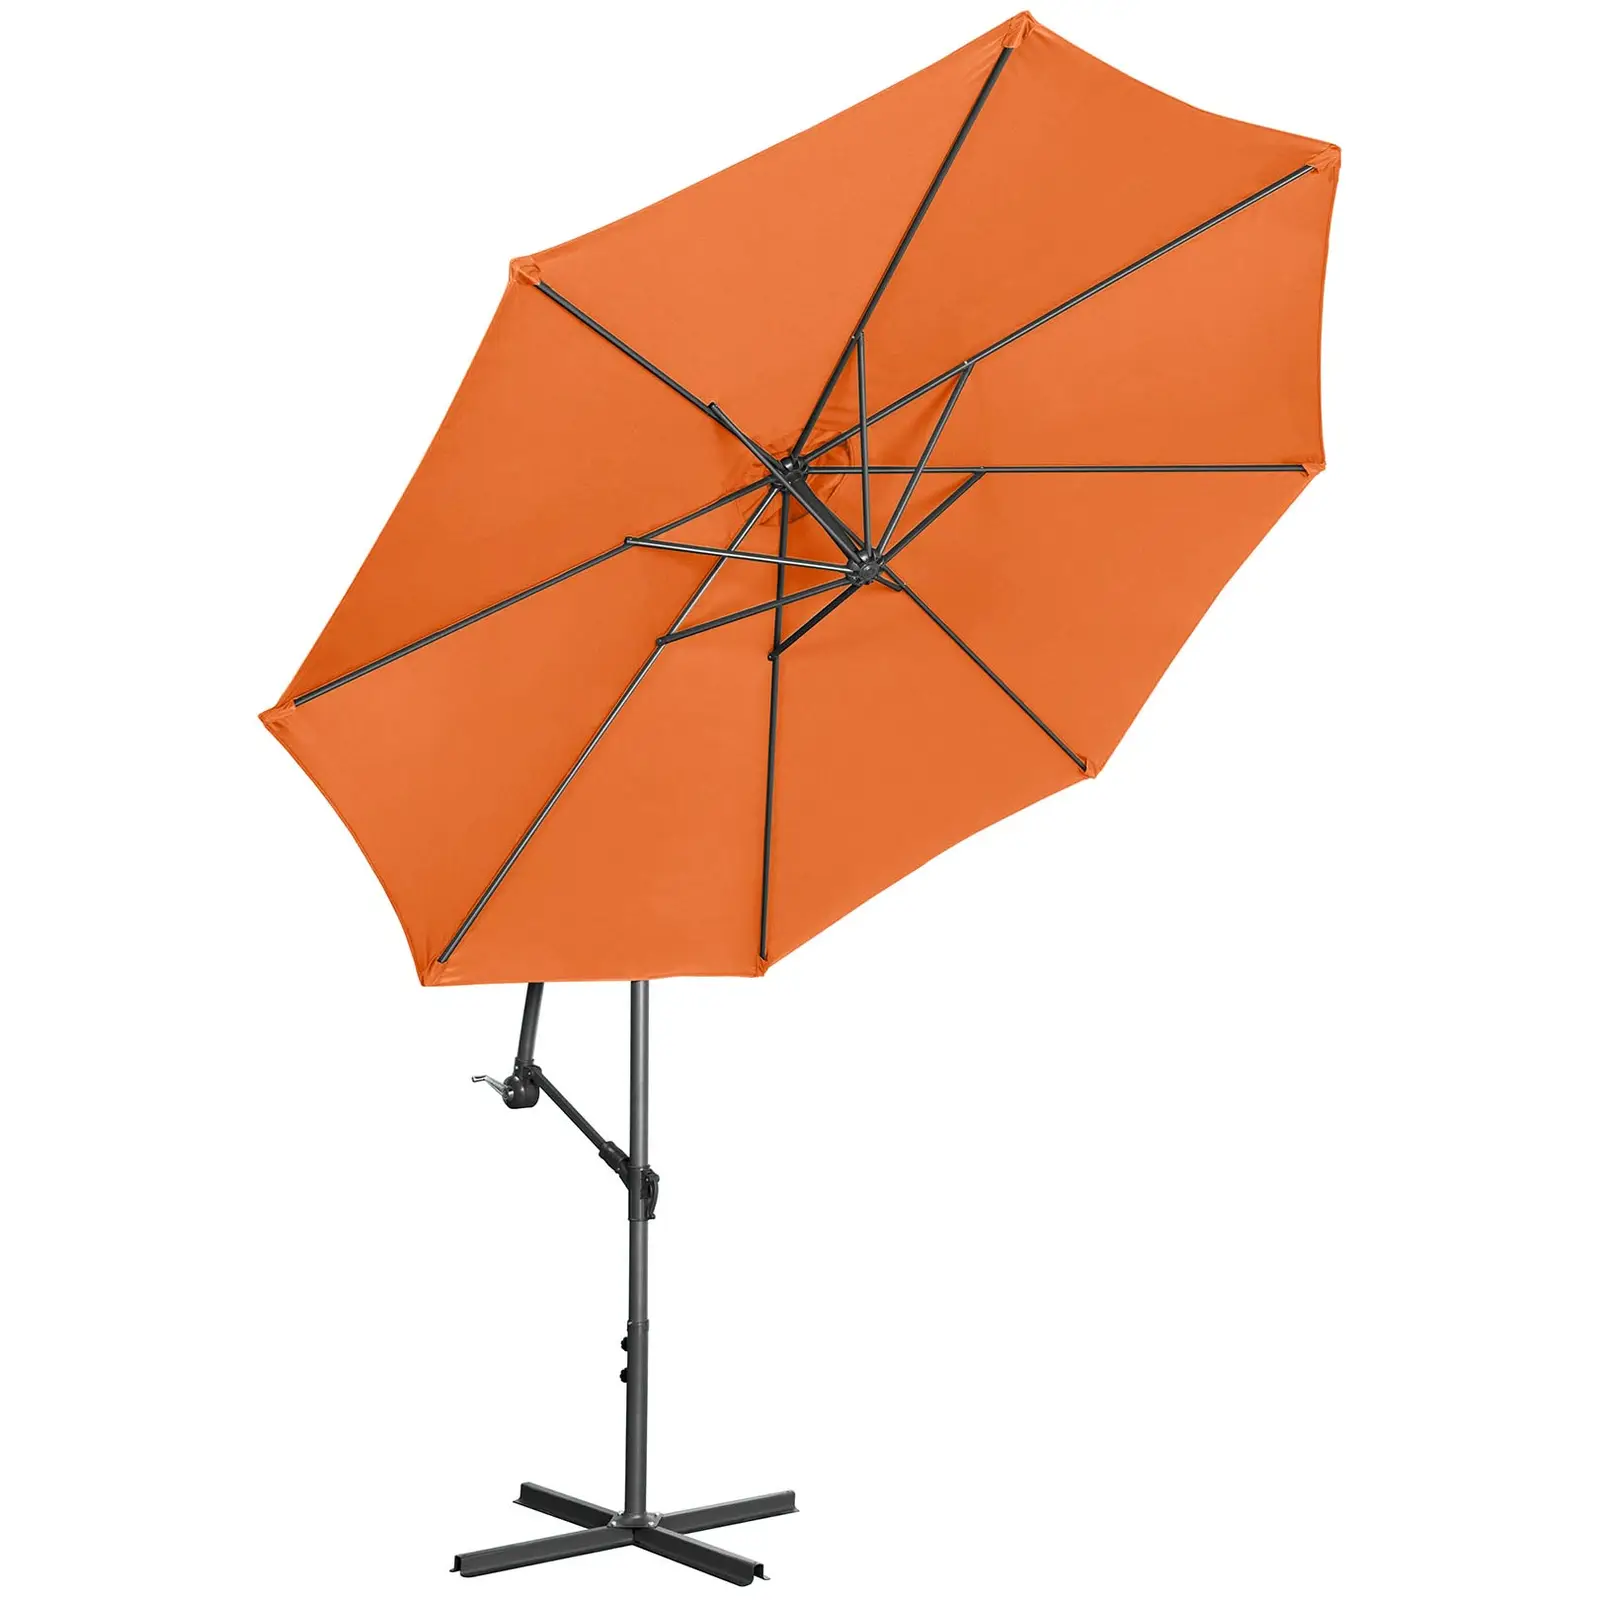 Ampelschirm - Orange - rund - Ø 300 cm - neigbar - 2